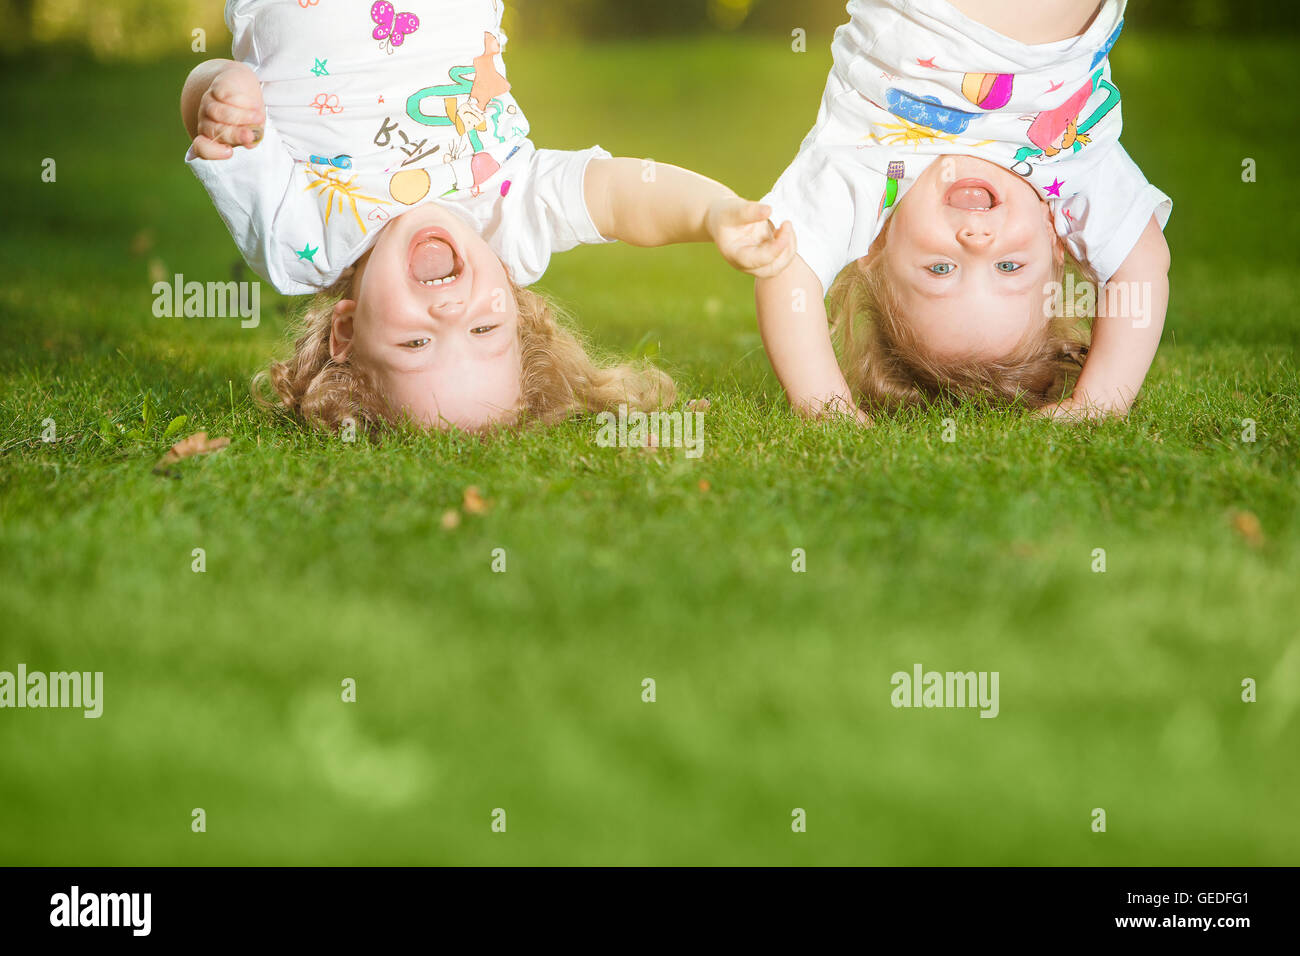 Les deux petites filles de bébé tête en bas Photo Stock - Alamy